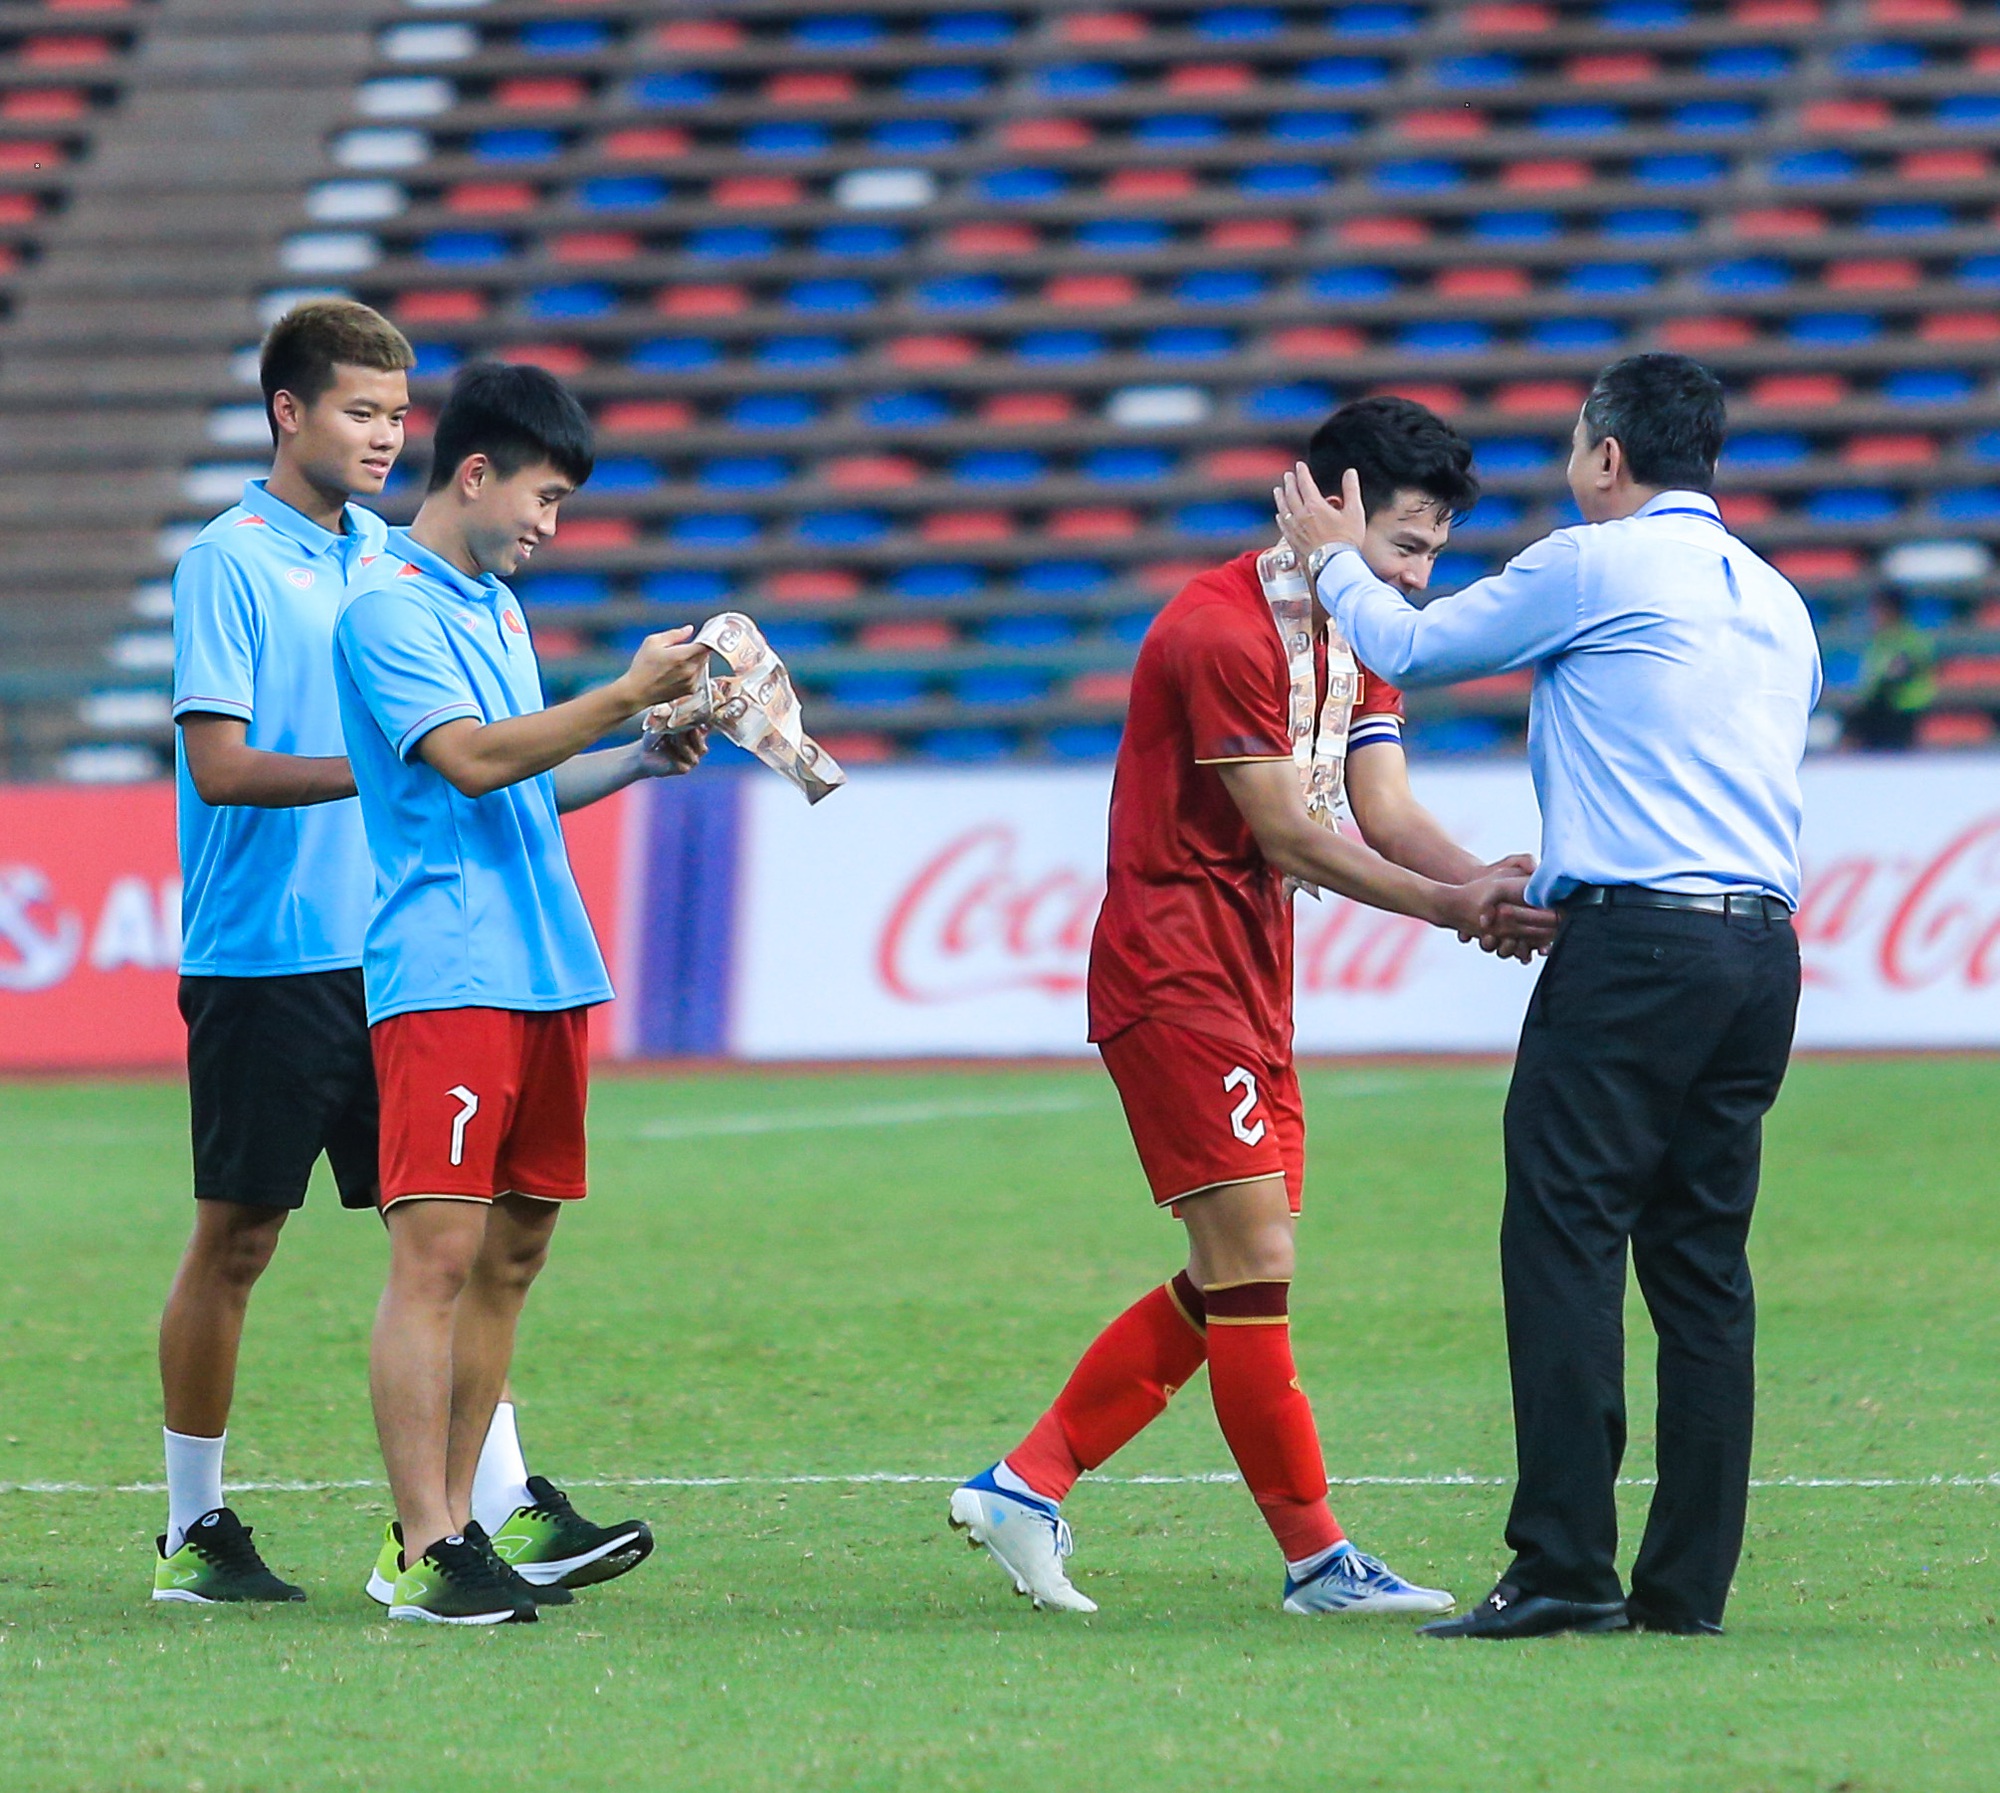 Cảm xúc trái ngược sau trận đấu: U22 Việt Nam hân hoan, cầu thủ U22 Myanmar đổ gục sau khi tuột HCĐ - Ảnh 9.